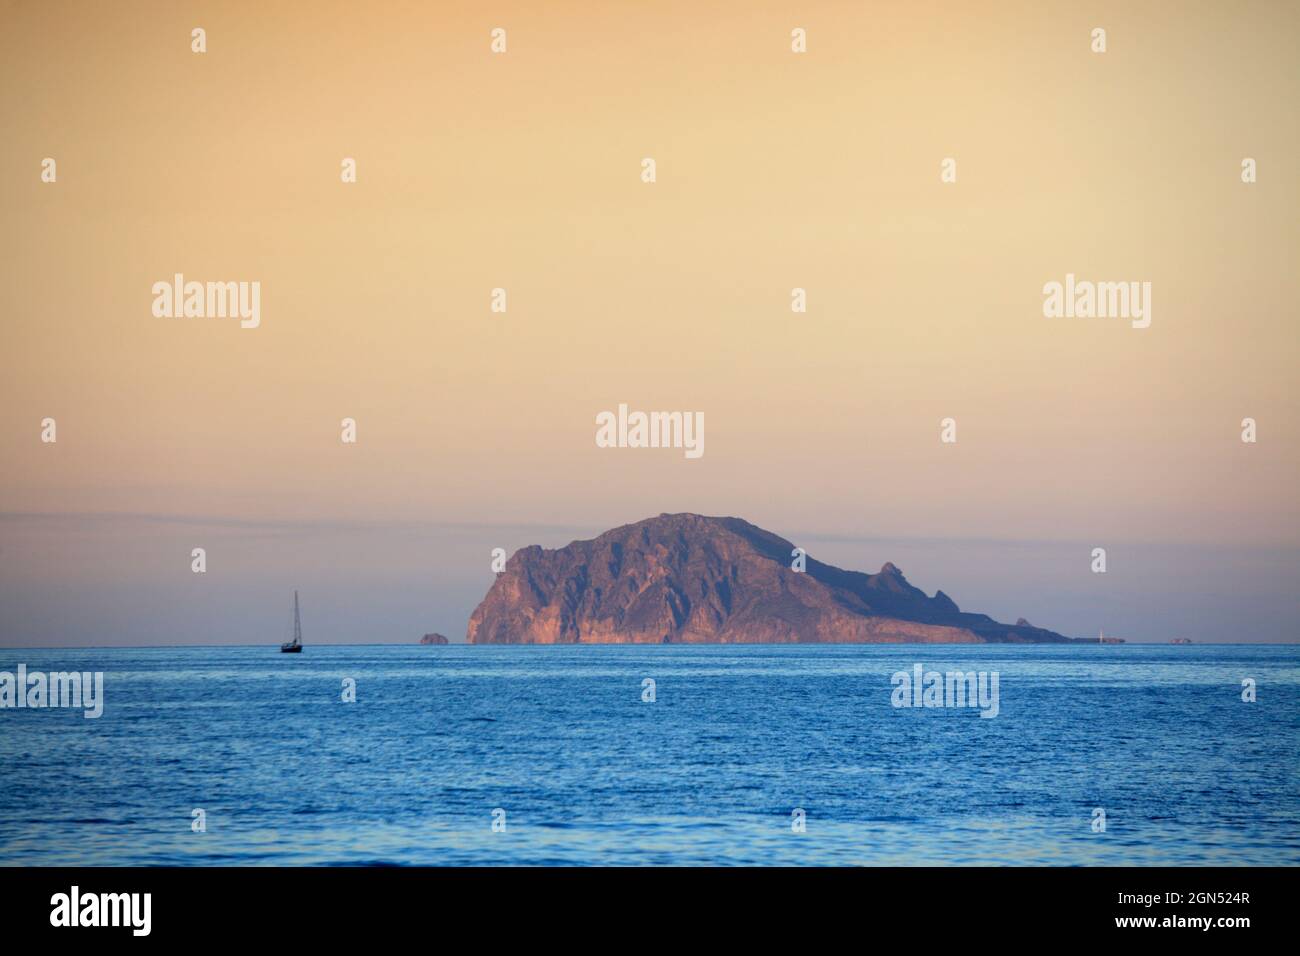 Panarea island seen from Salina, Aeolian Islands, Sicily, Italy Stock Photo